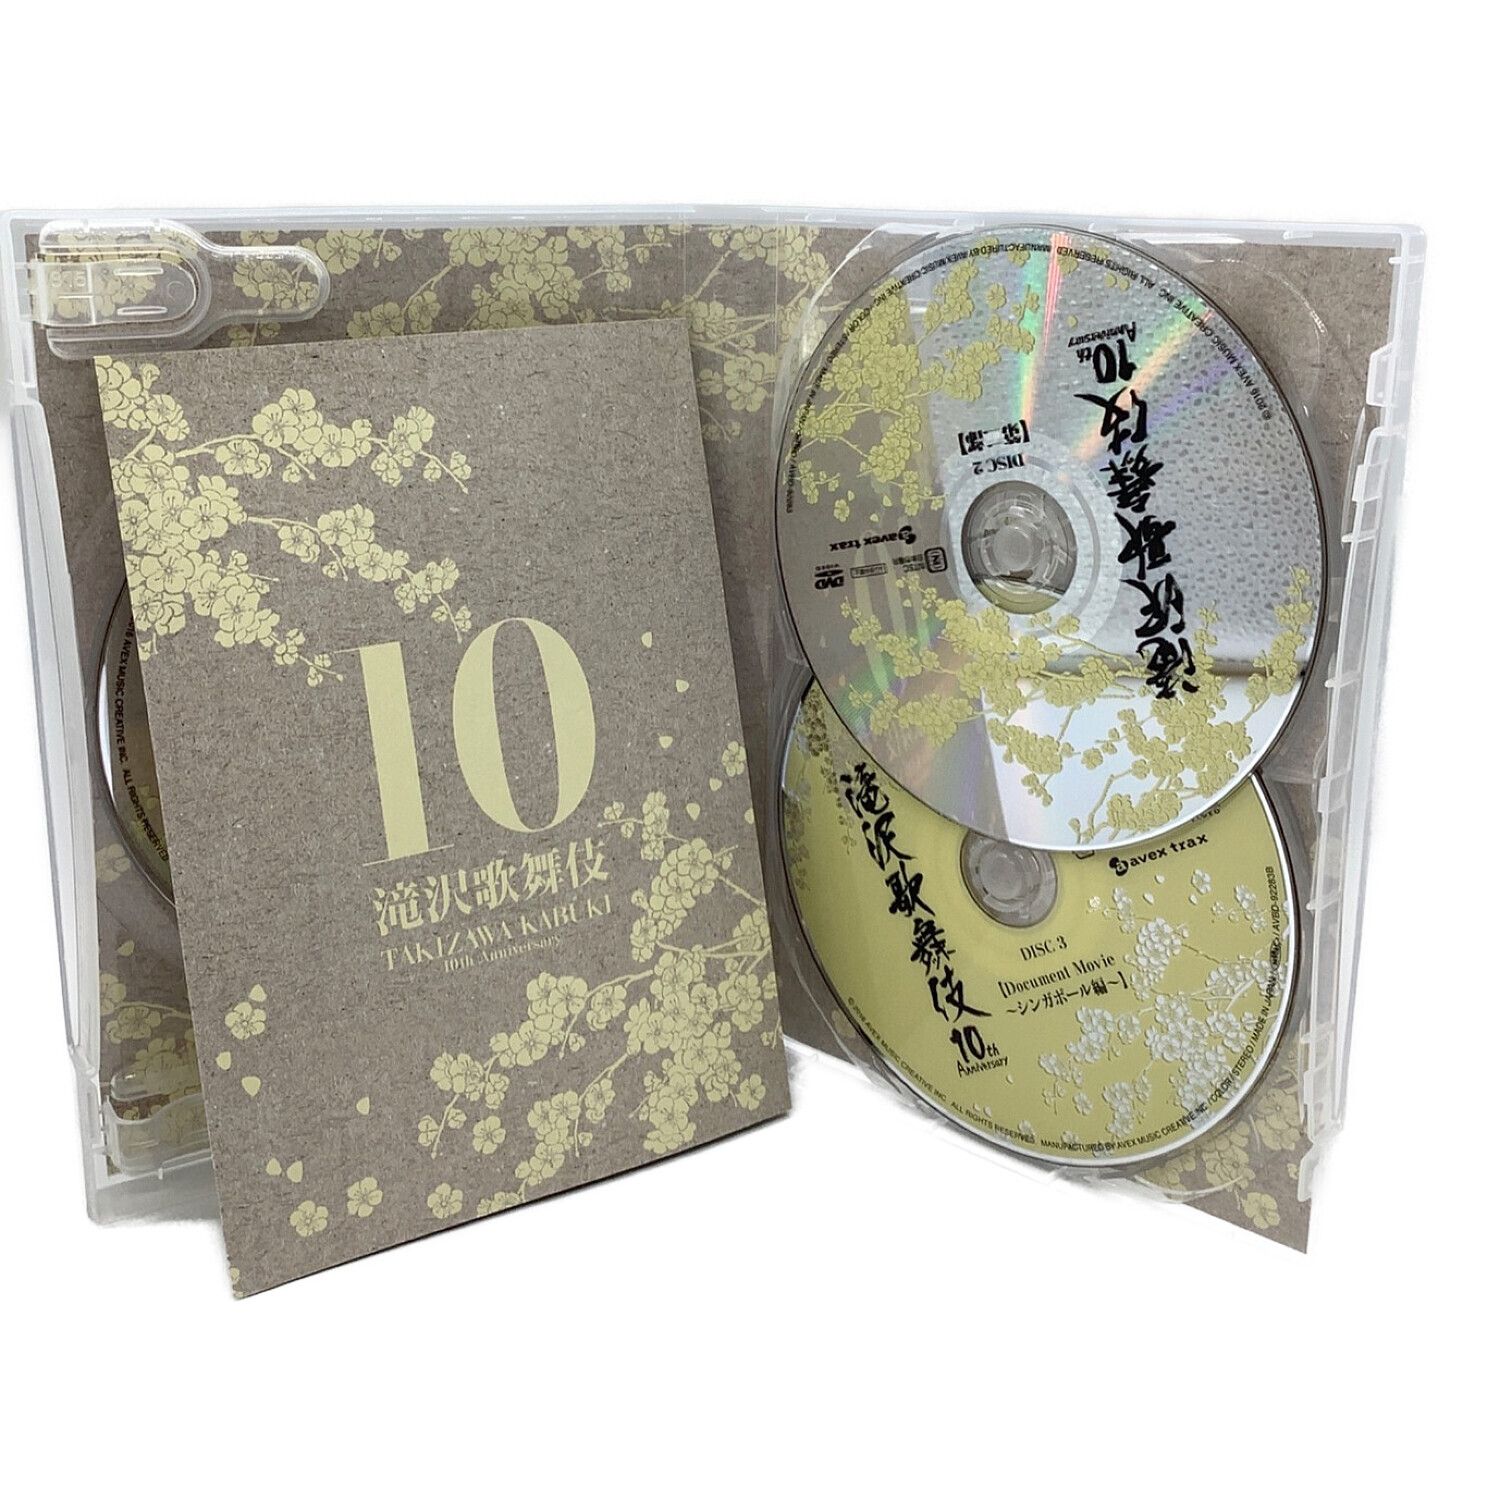 滝沢歌舞伎10th Anniversary シンガポール盤〈3枚組〉